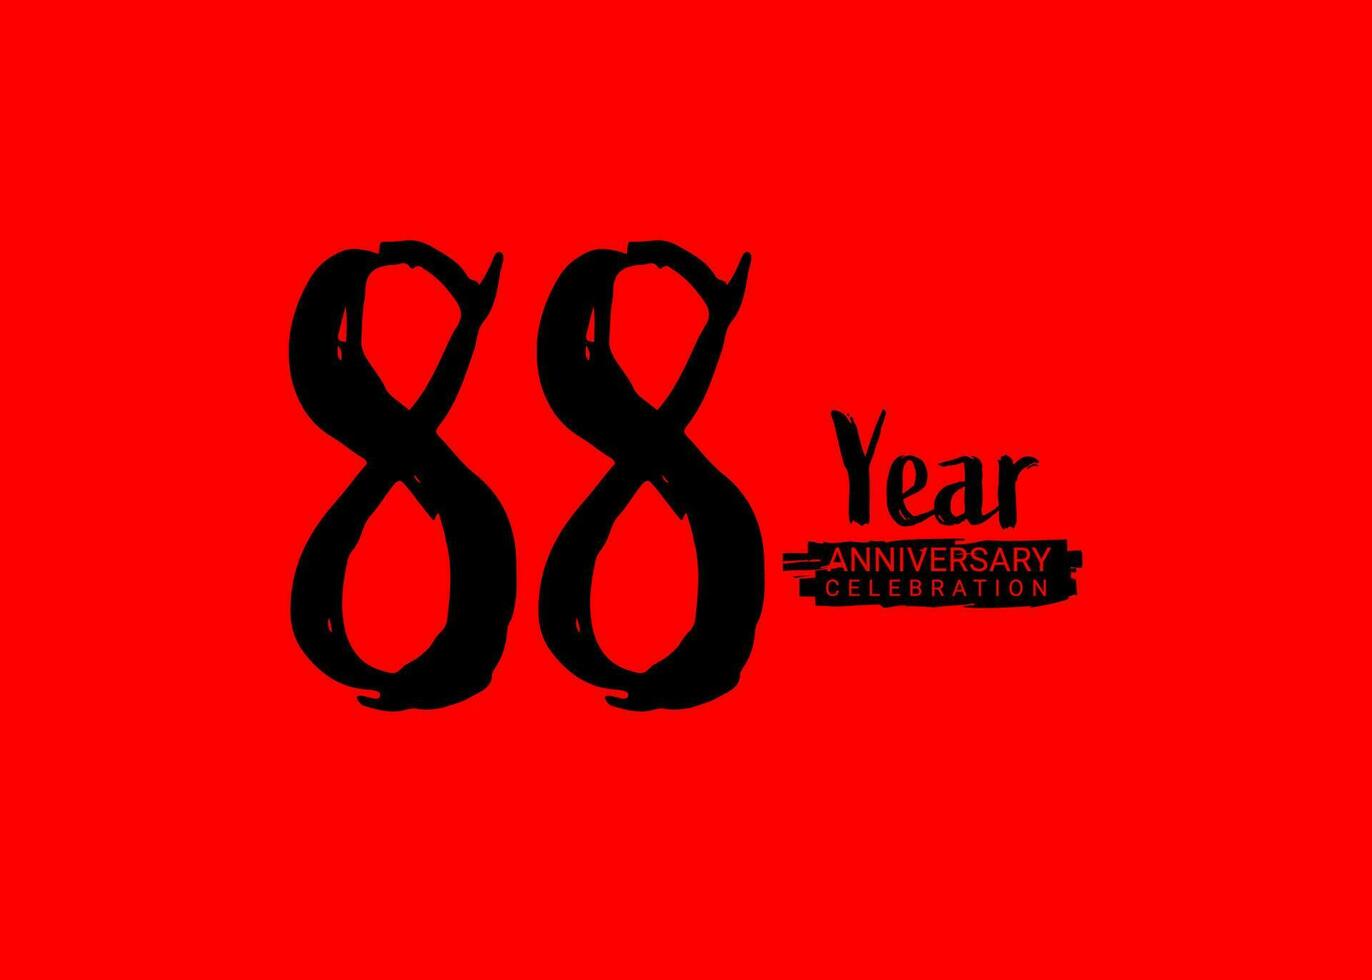 88 år årsdag firande logotyp på röd bakgrund, 88 siffra logotyp design, 88:a födelsedag logotyp, logotyp årsdag, vektor årsdag för firande, affisch, inbjudan kort